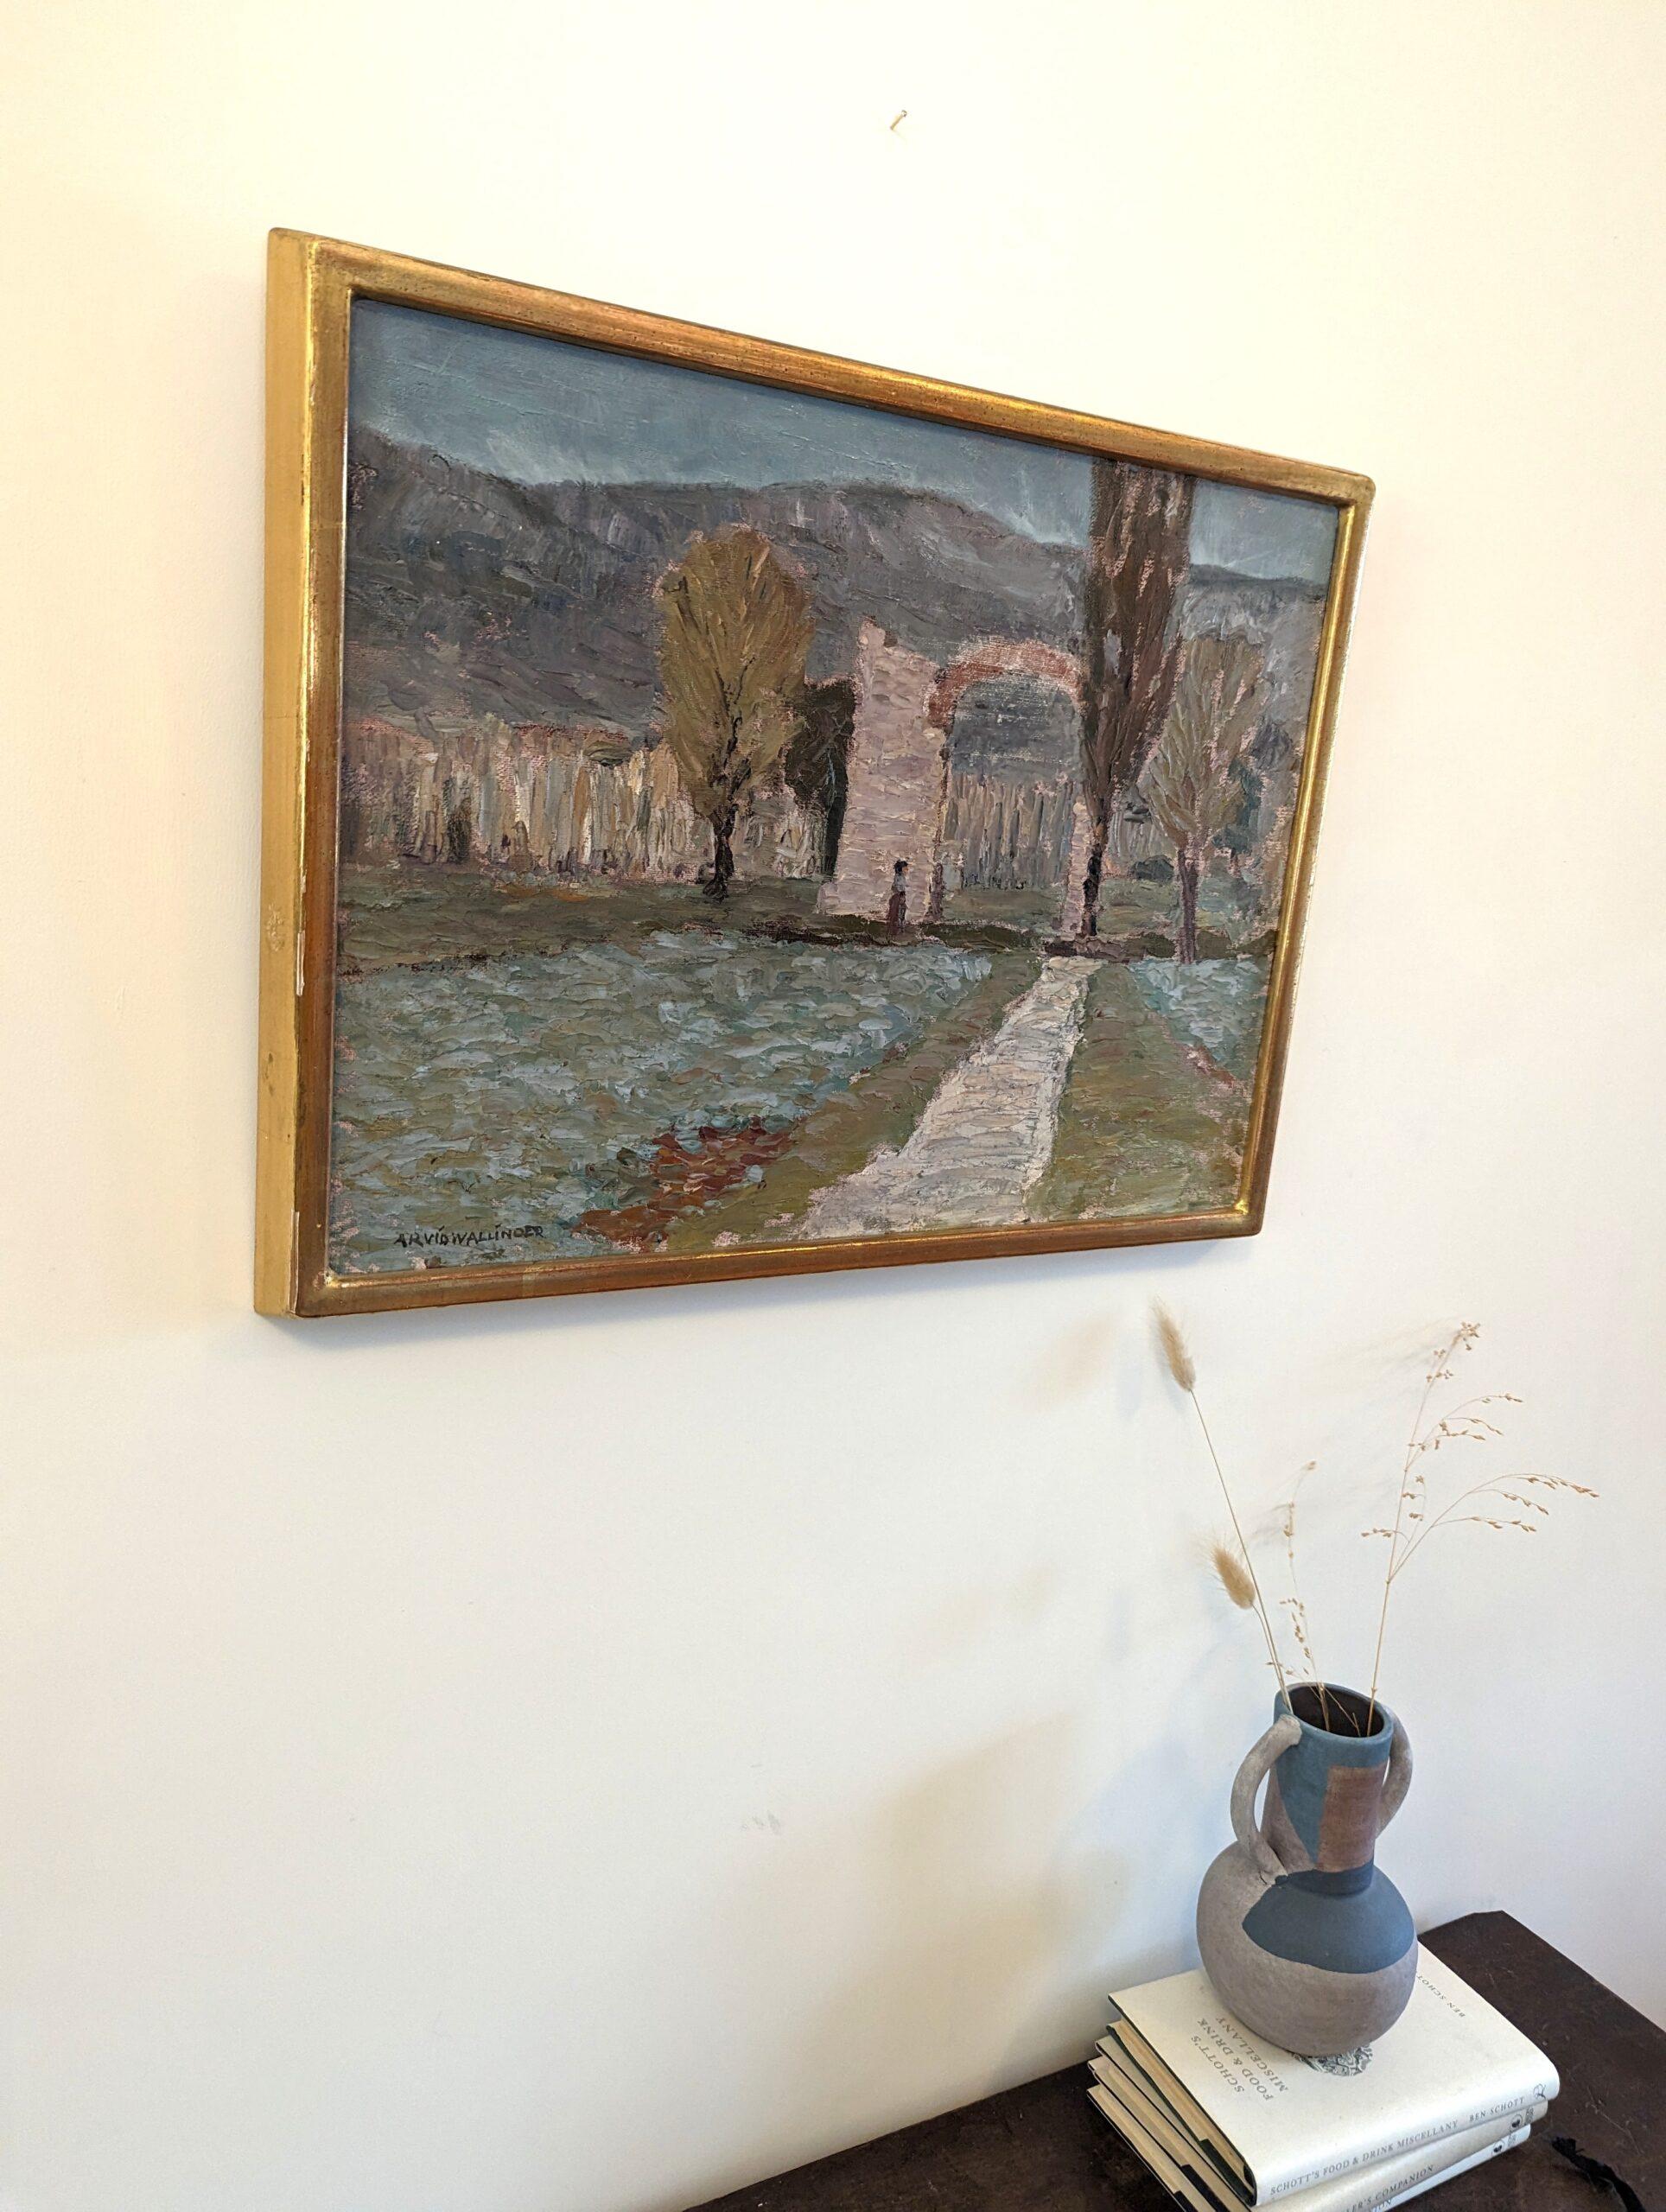 ITALIENISCHES VALLEY
Größe: 38 x 49 cm (einschließlich Rahmen)
Öl auf Karton

Eine wunderschön strukturierte und ausdrucksstarke Landschaftskomposition im modernistischen Stil, gemalt in Öl auf Leinwand und datiert 1967 auf der Rückseite.

Diese